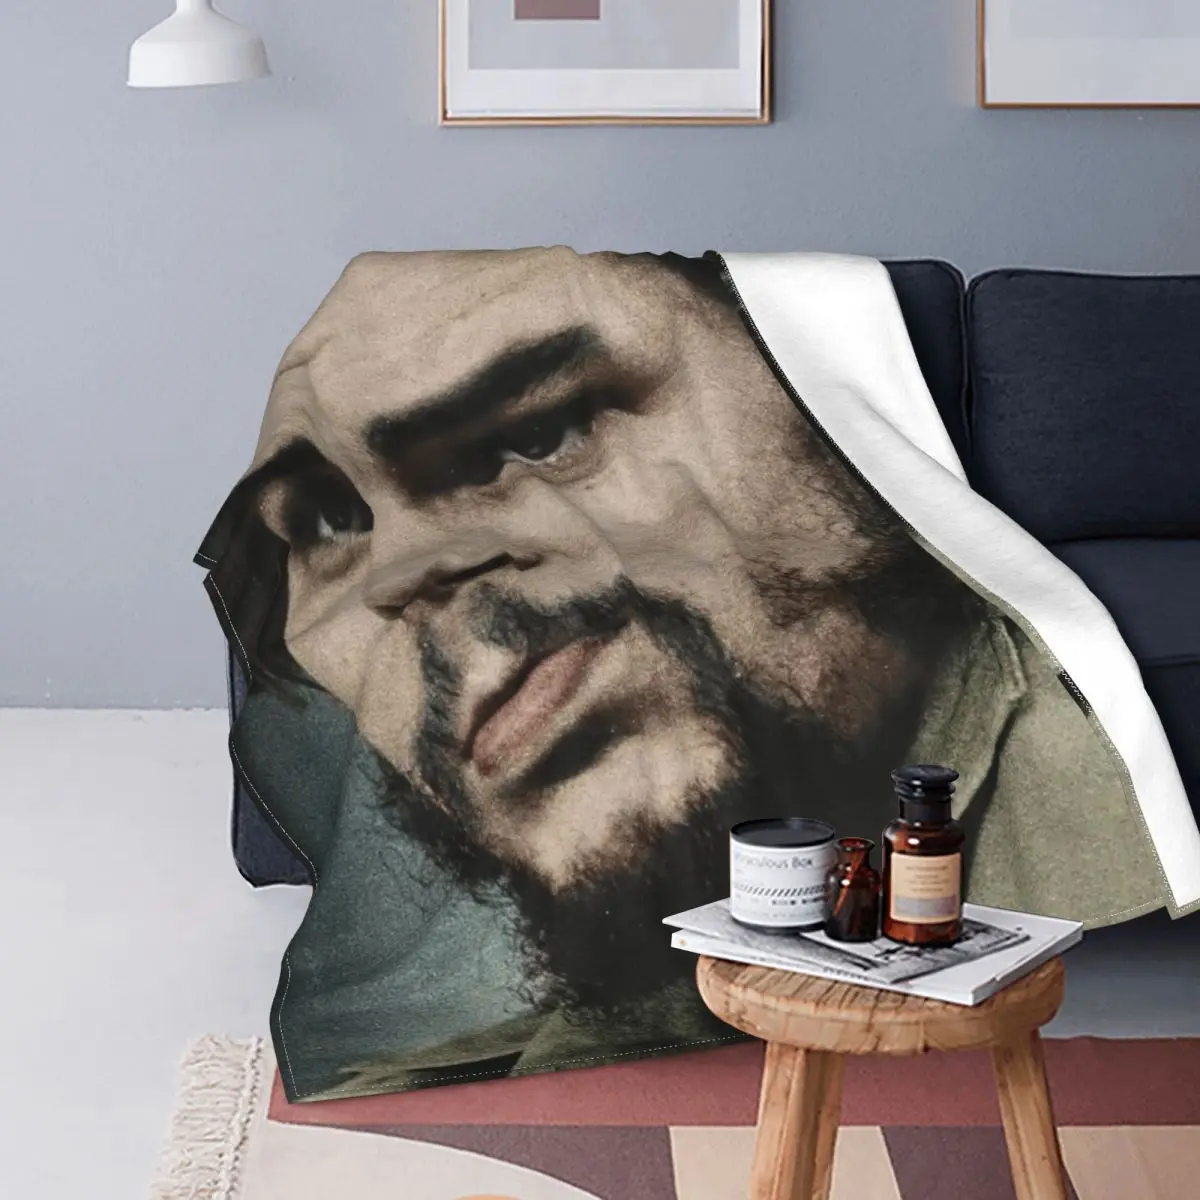 

Ernesto Che Guevara одеяло из кораллового флиса плюшевое революционное Hero мужское супер теплое плед одеяло s для постельного белья диван кровати ков...